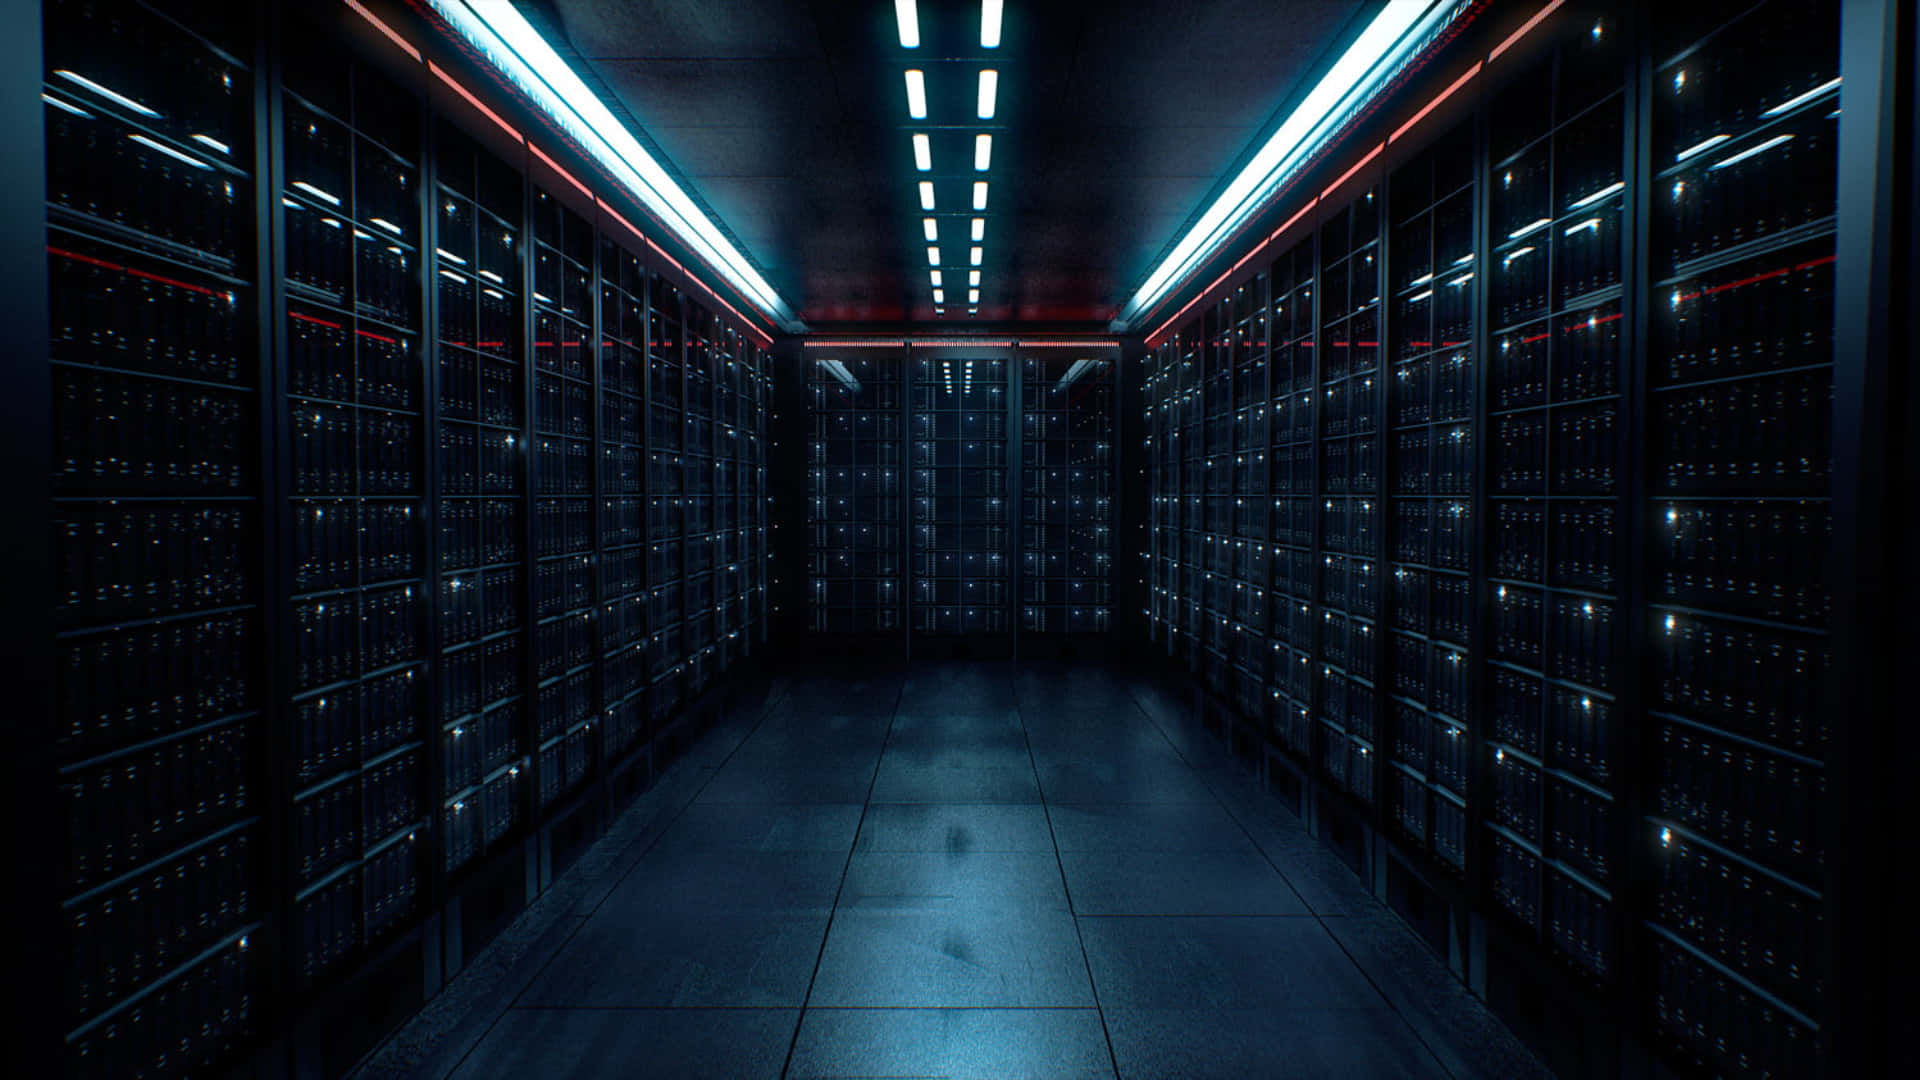 A Dark Hallway With Many Servers